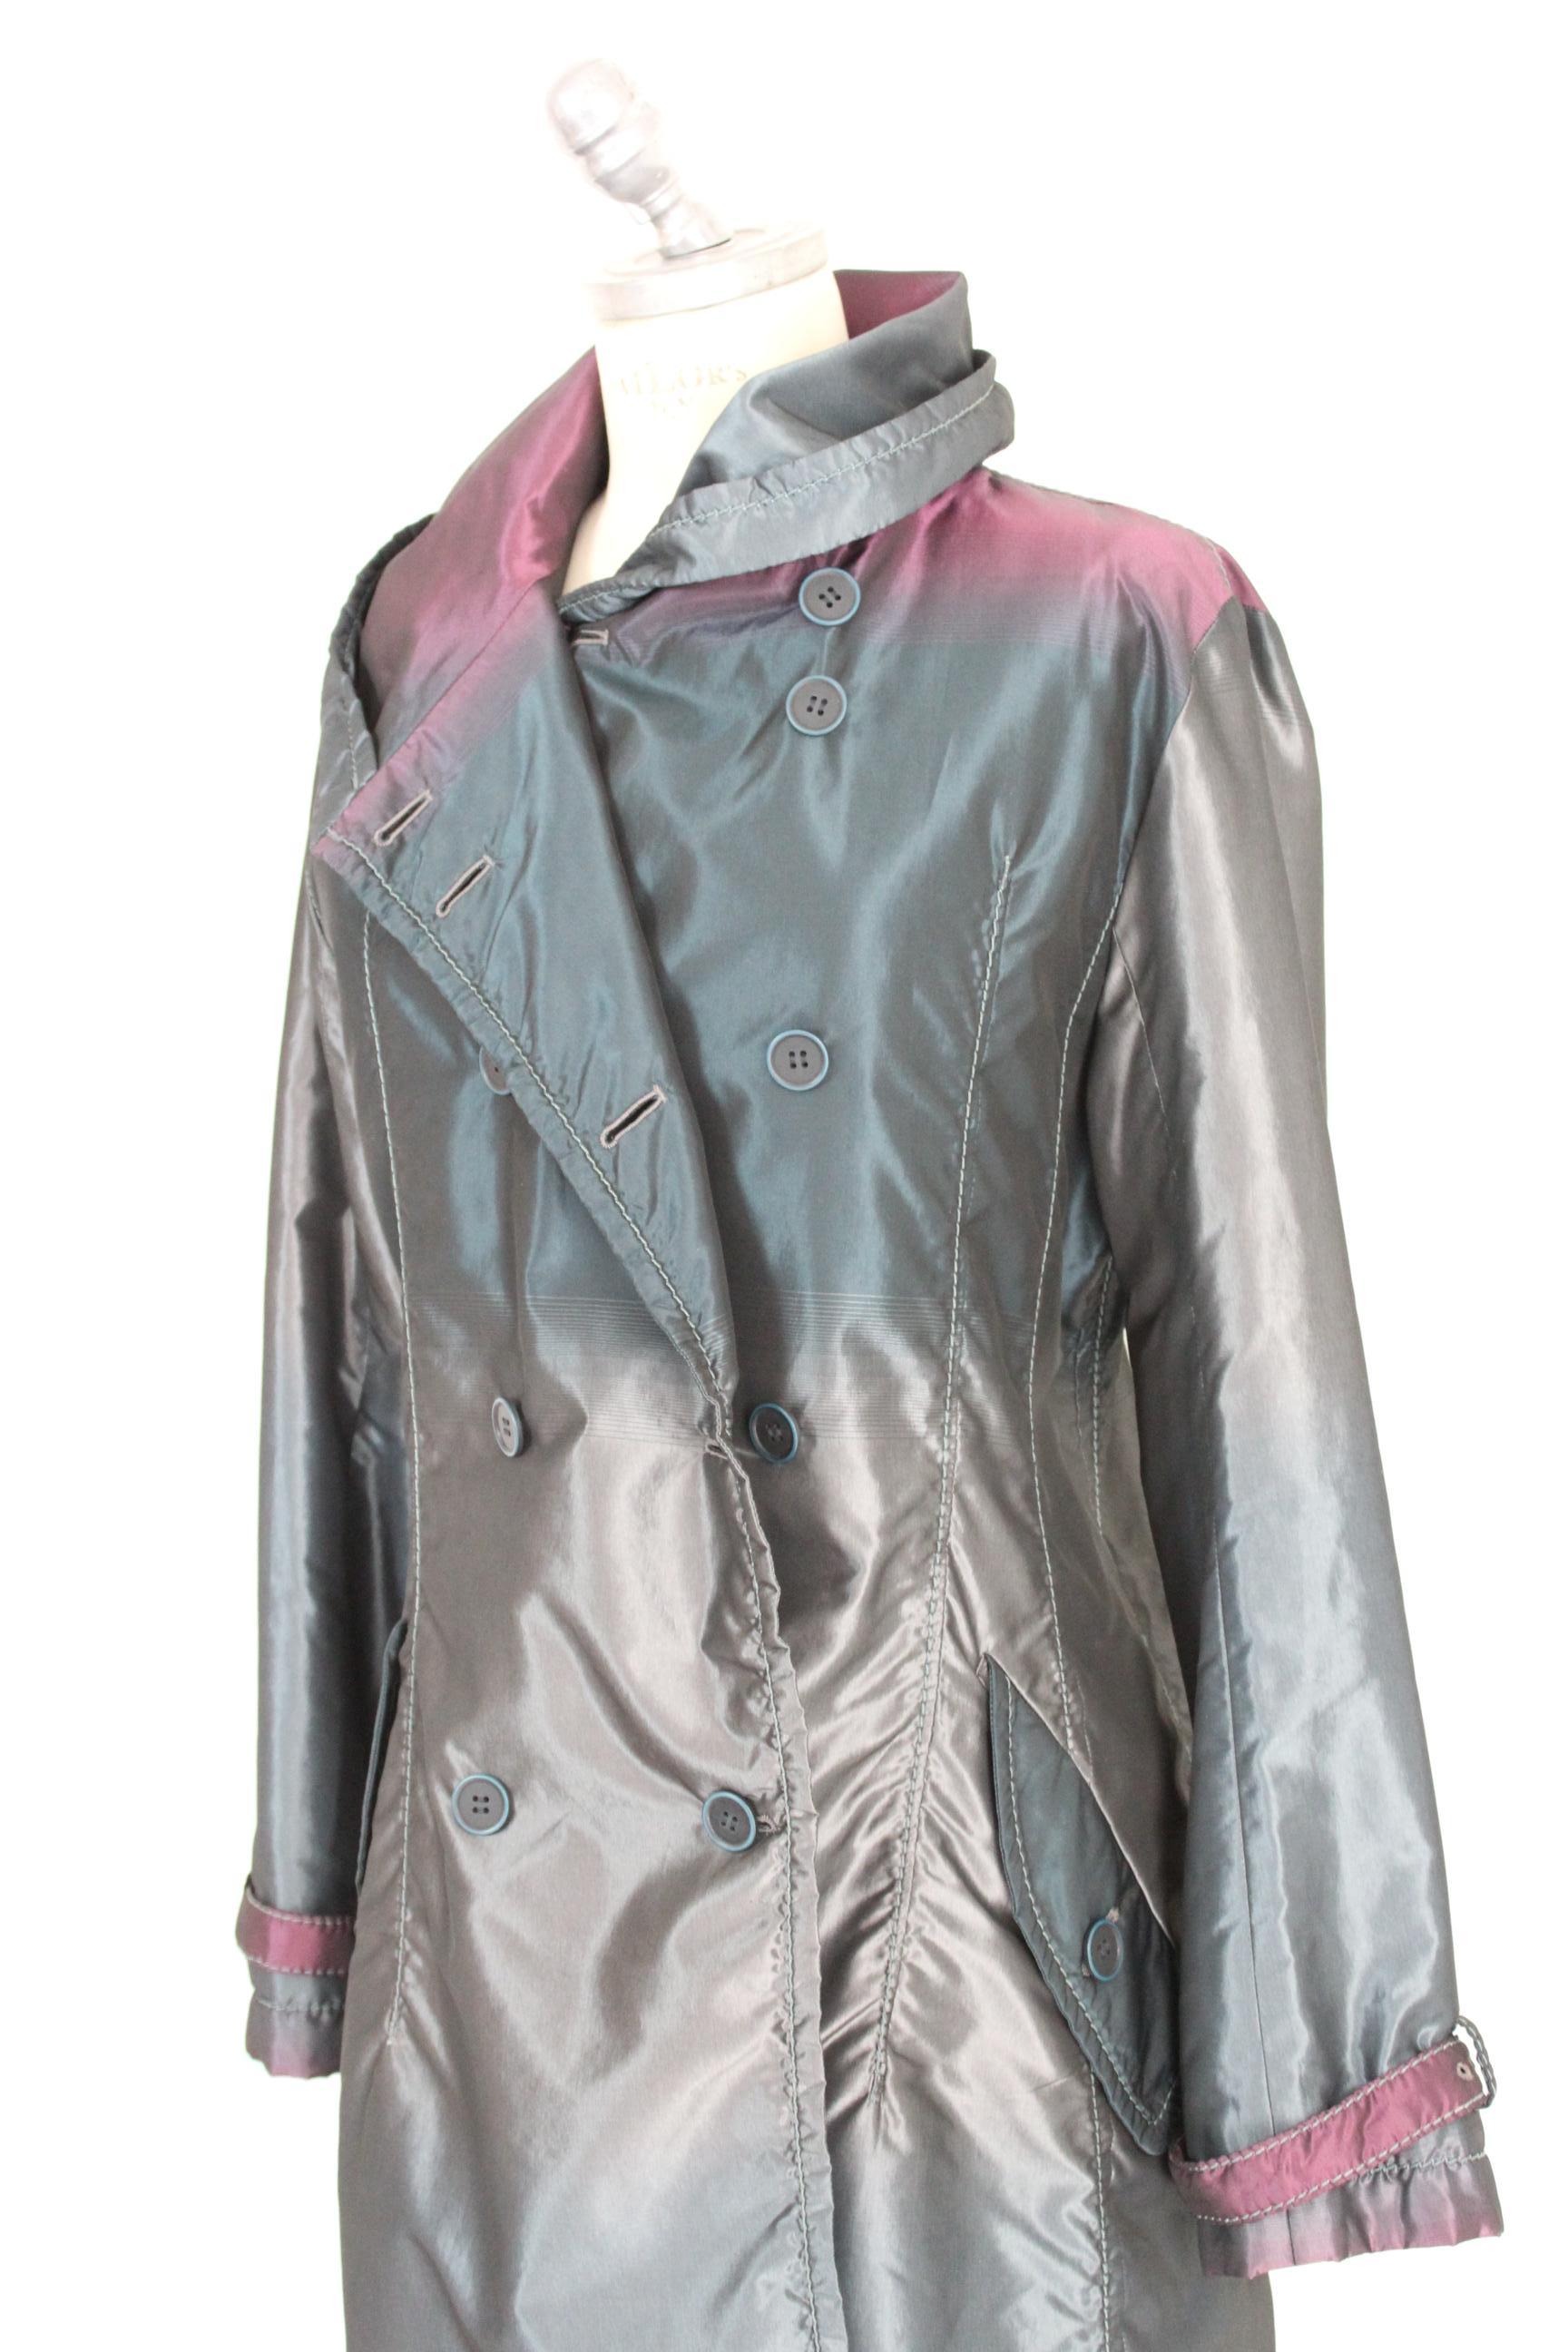 Issey Miyake Gray Blue Silk Trench Coat 1990s 1